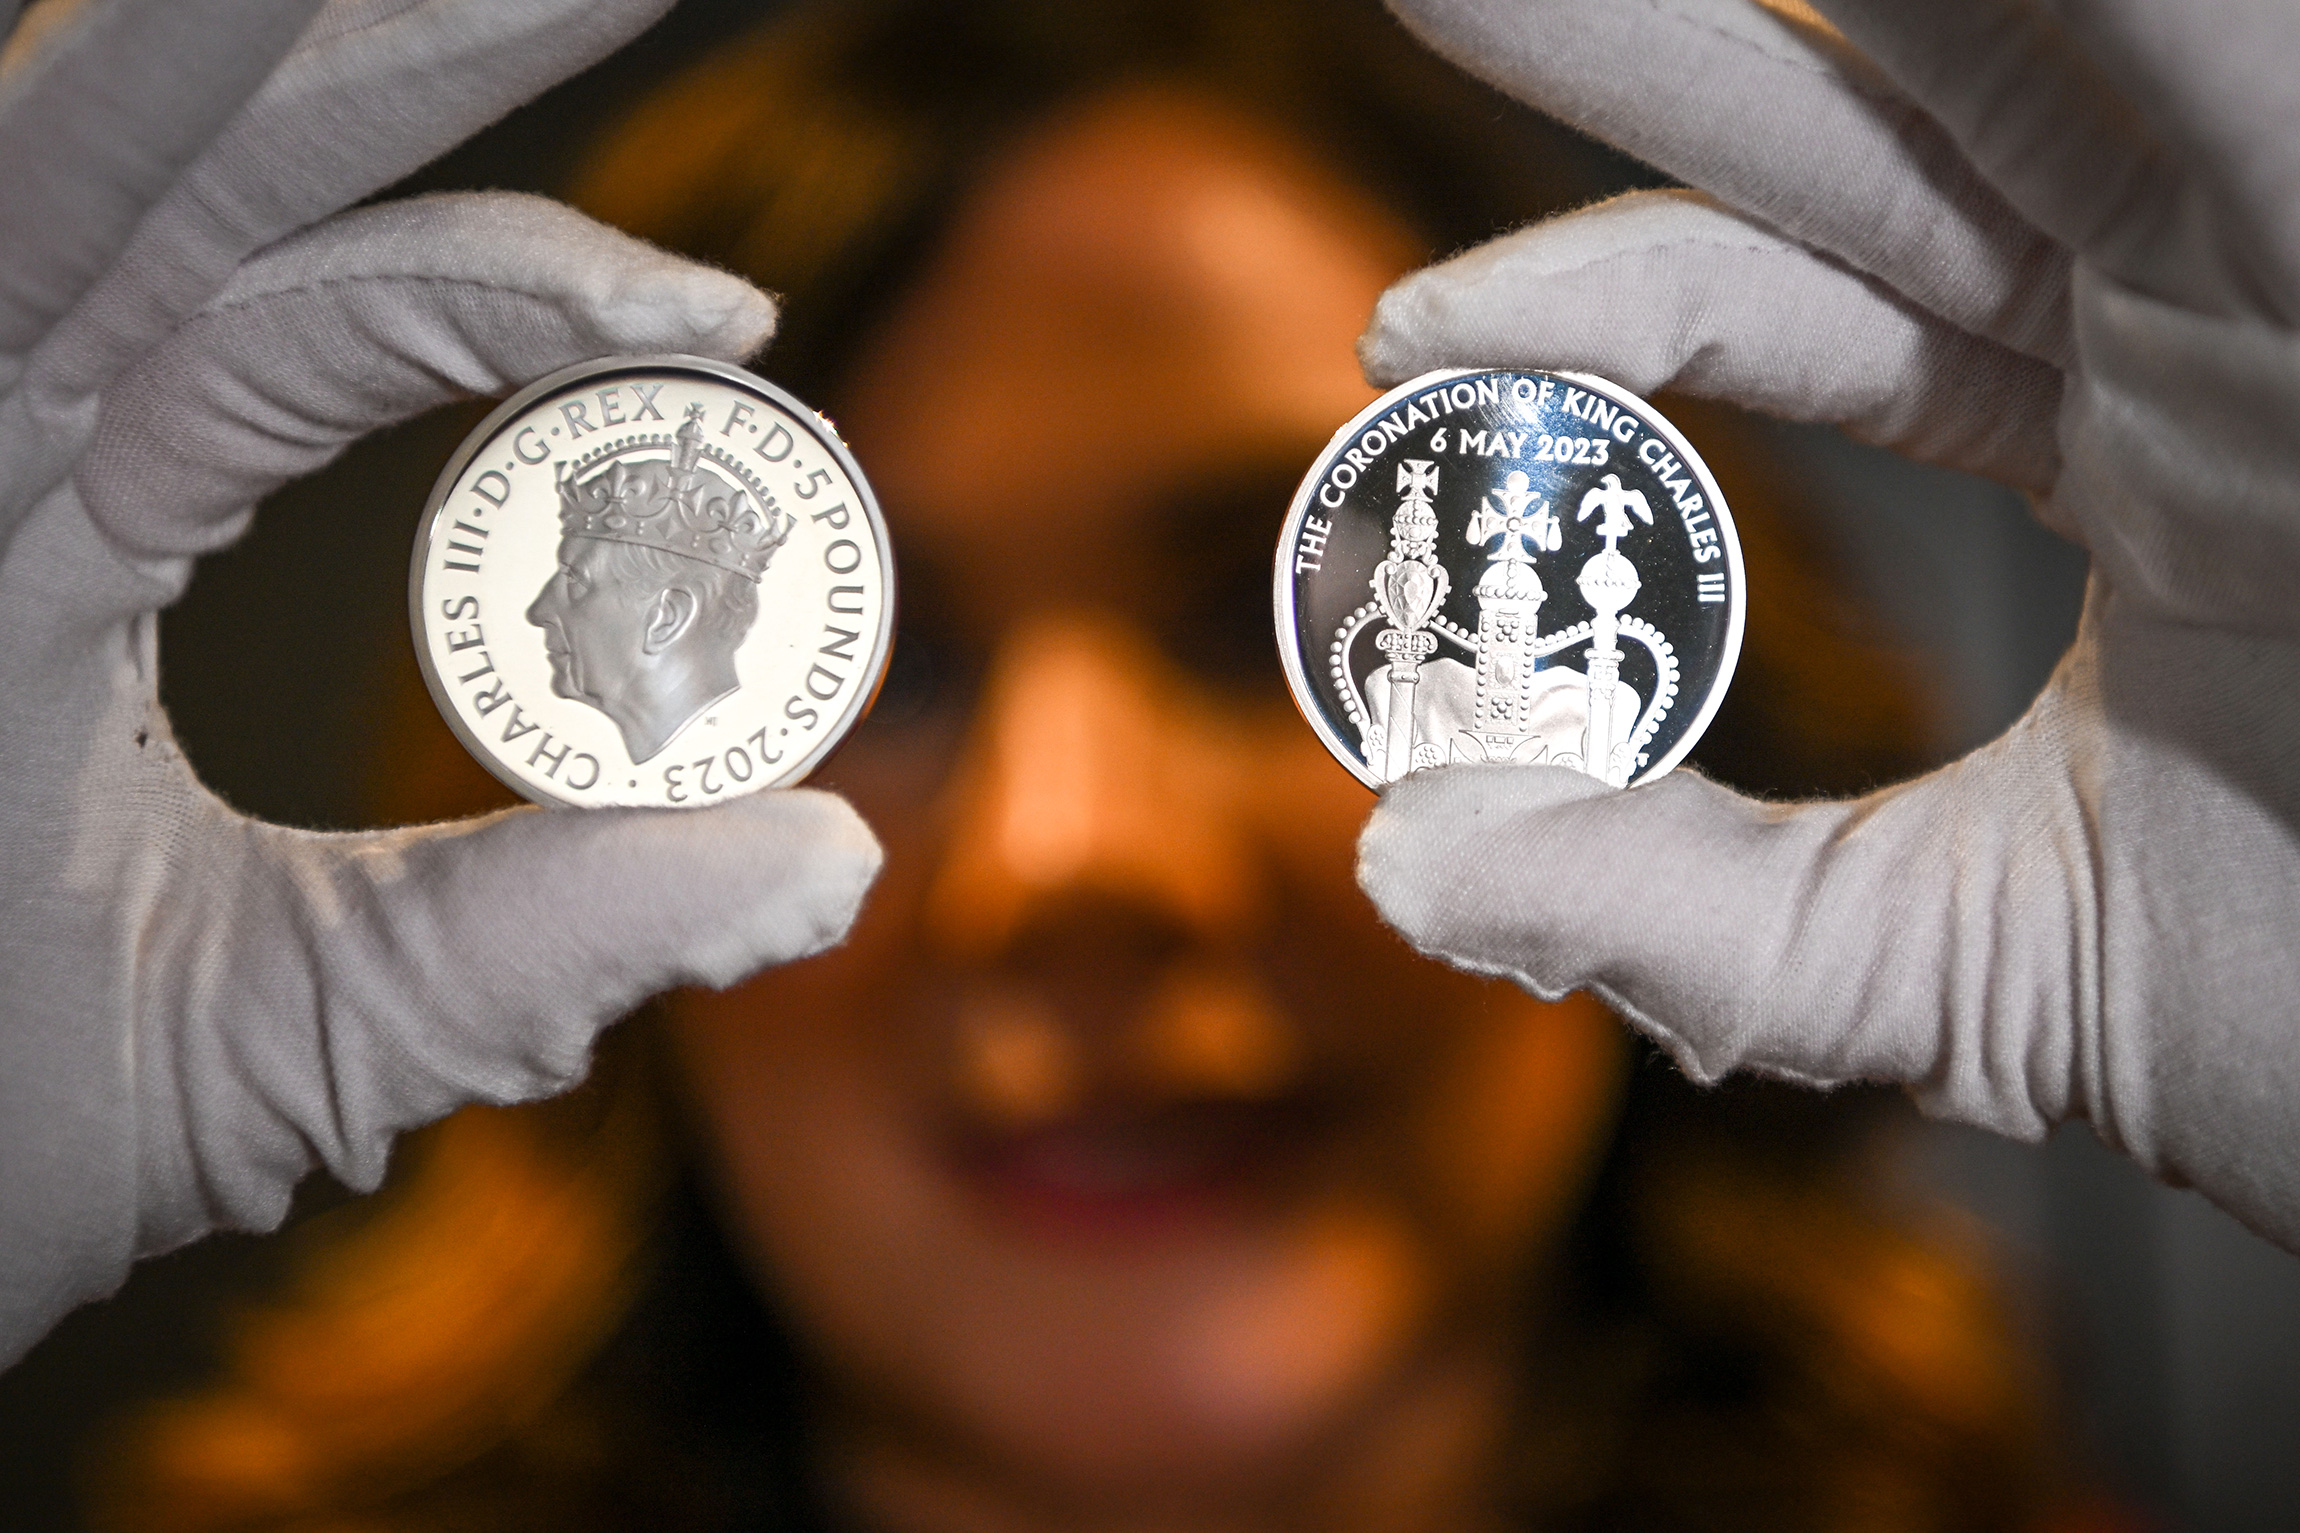 Королевский монетный двор представил монеты, посвященные предстоящей коронации: с одной стороны на них изображен Карл III с короной Тюдоров на голове, с другой&nbsp;&mdash; Вестминстерское аббатство или корона Святого Эдуарда, созданная в 1661 году для Карла II. Деньги не будут выпущены в обращение и будут доступны лишь как предметы коллекционирования. Памятные монеты будут номиналом 50 пенсов и пять фунтов стерлингов